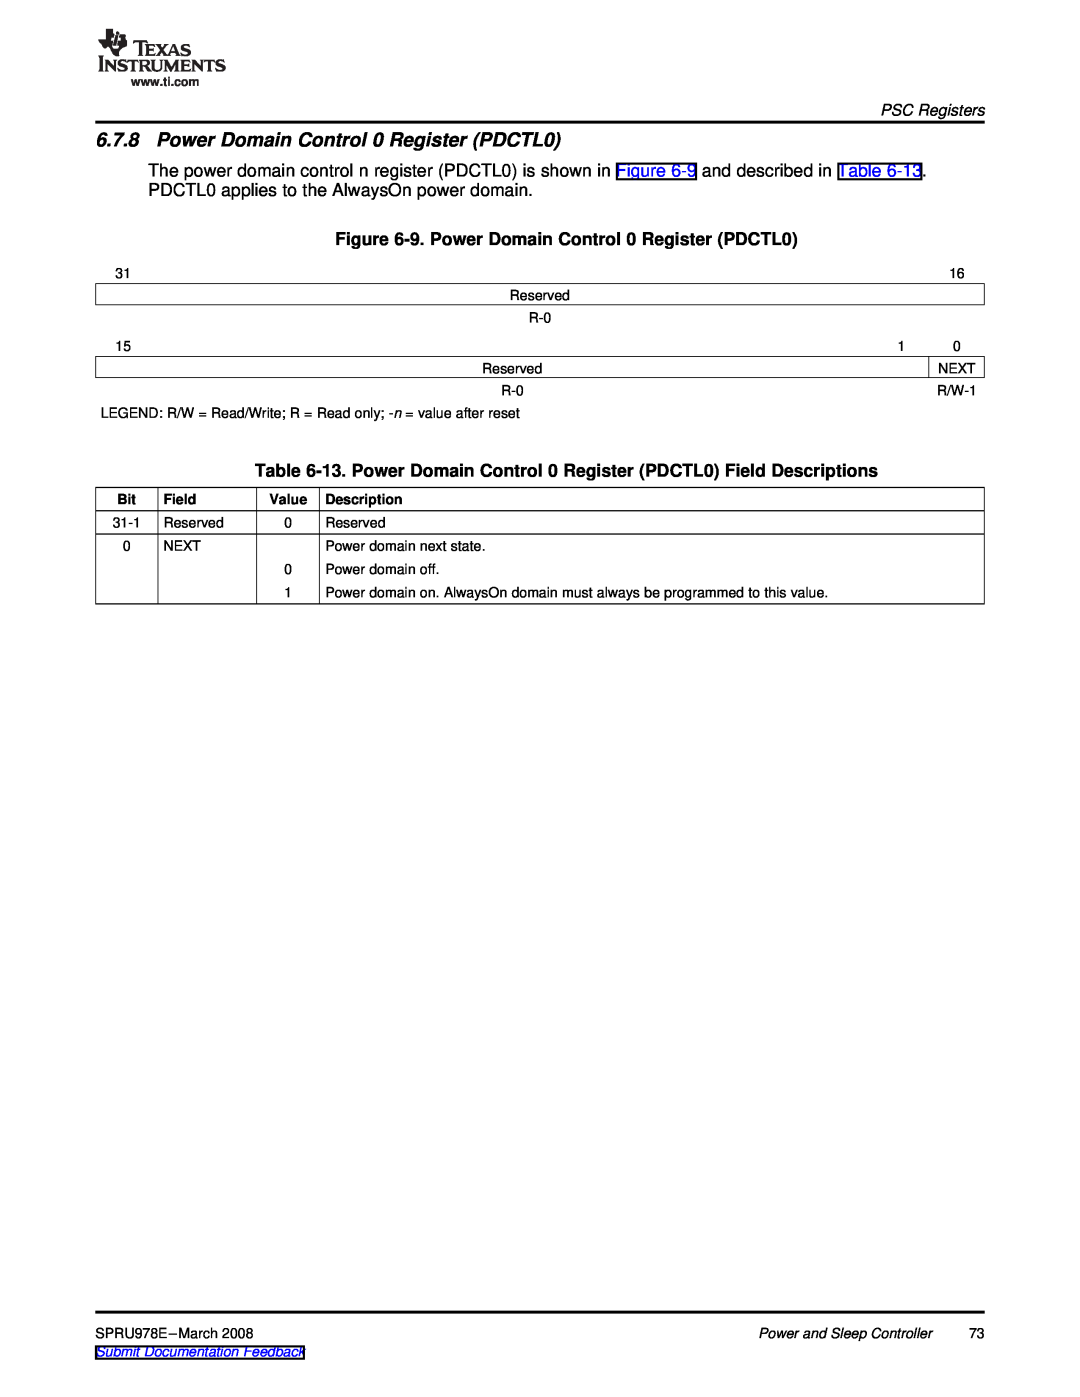 Texas Instruments TMS320DM643x manual 9. Power Domain Control 0 Register PDCTL0, PSC Registers, Field, Description 